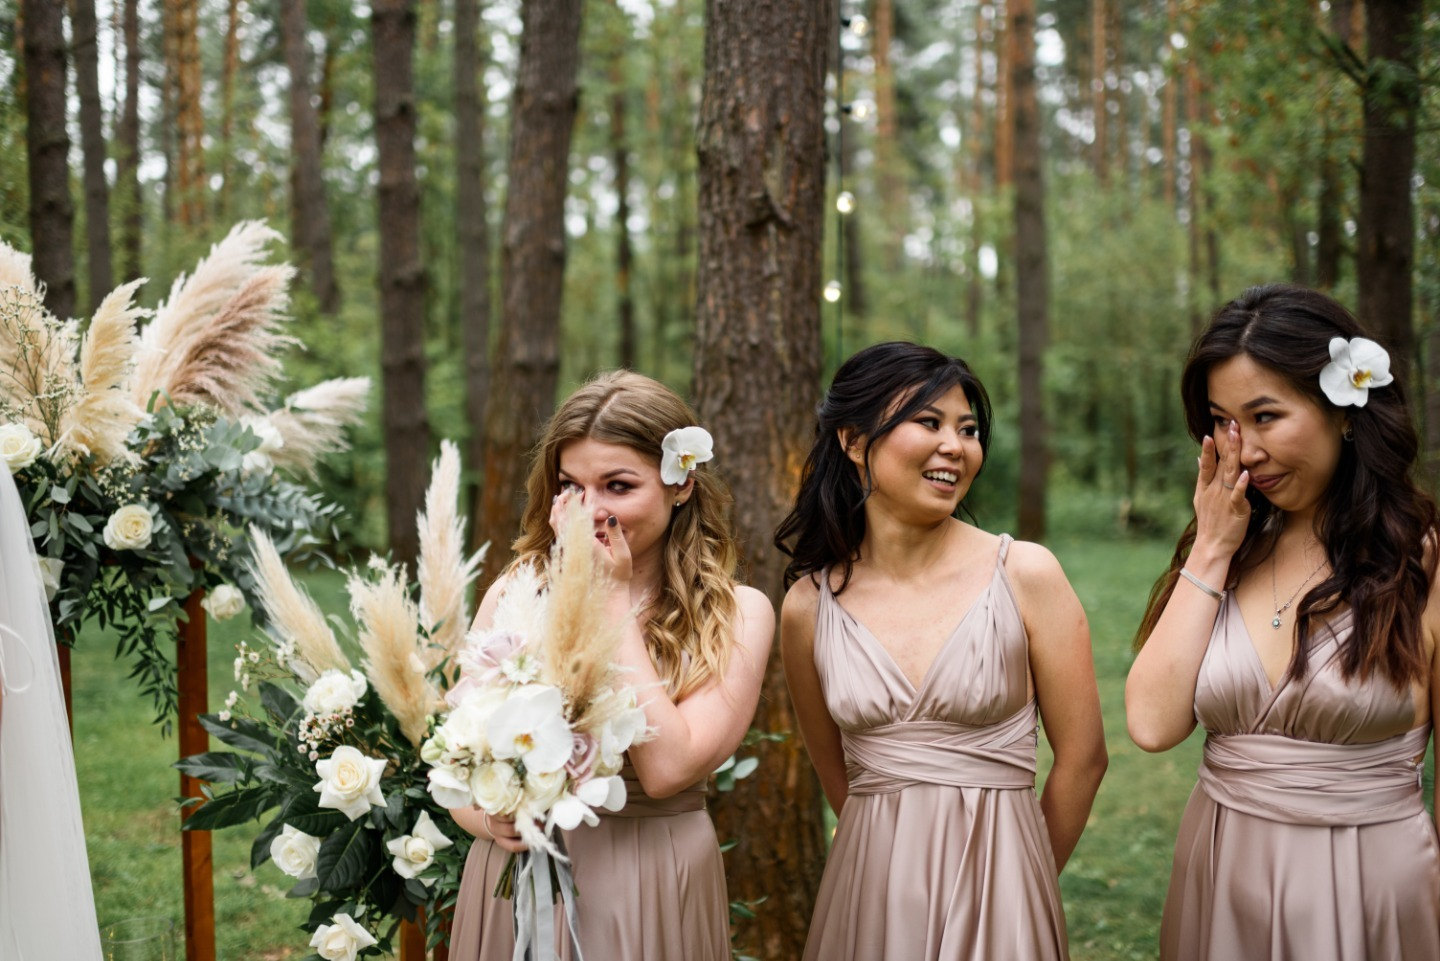 ФОТО ИЗ СТАТЬИ: Воздушная свадьба в лесных оттенках